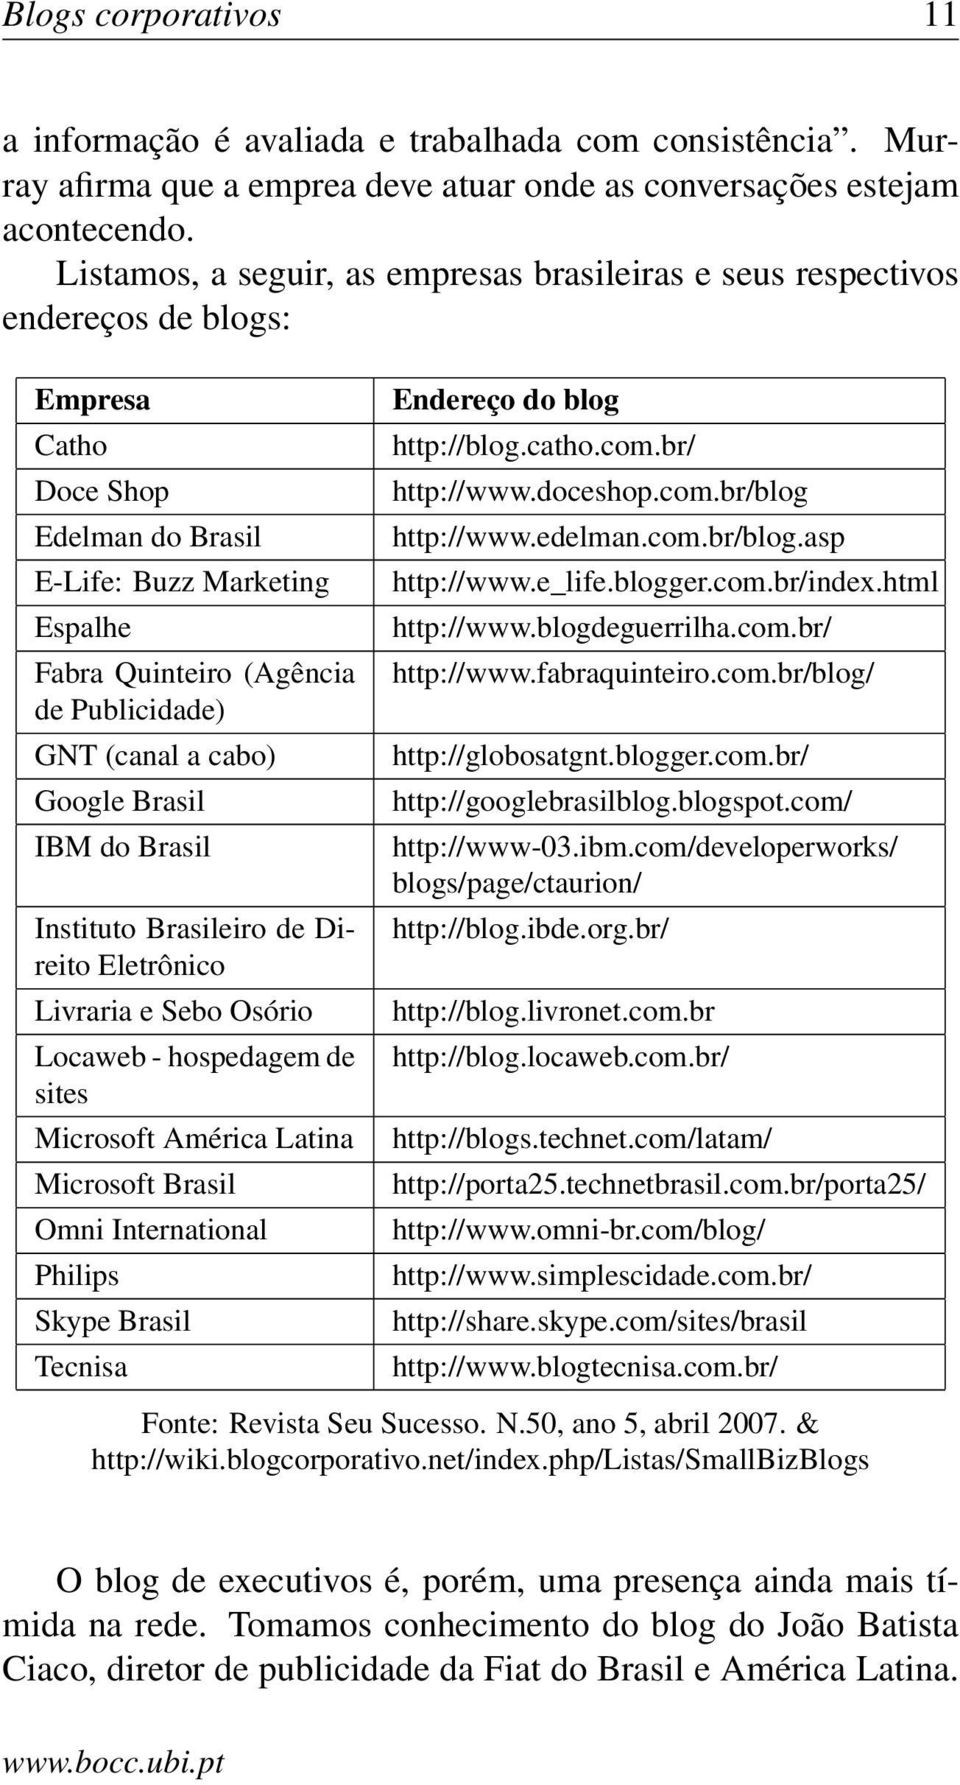 GNT (canal a cabo) Google Brasil IBM do Brasil Instituto Brasileiro de Direito Eletrônico Livraria e Sebo Osório Locaweb - hospedagem de sites Microsoft América Latina Microsoft Brasil Omni